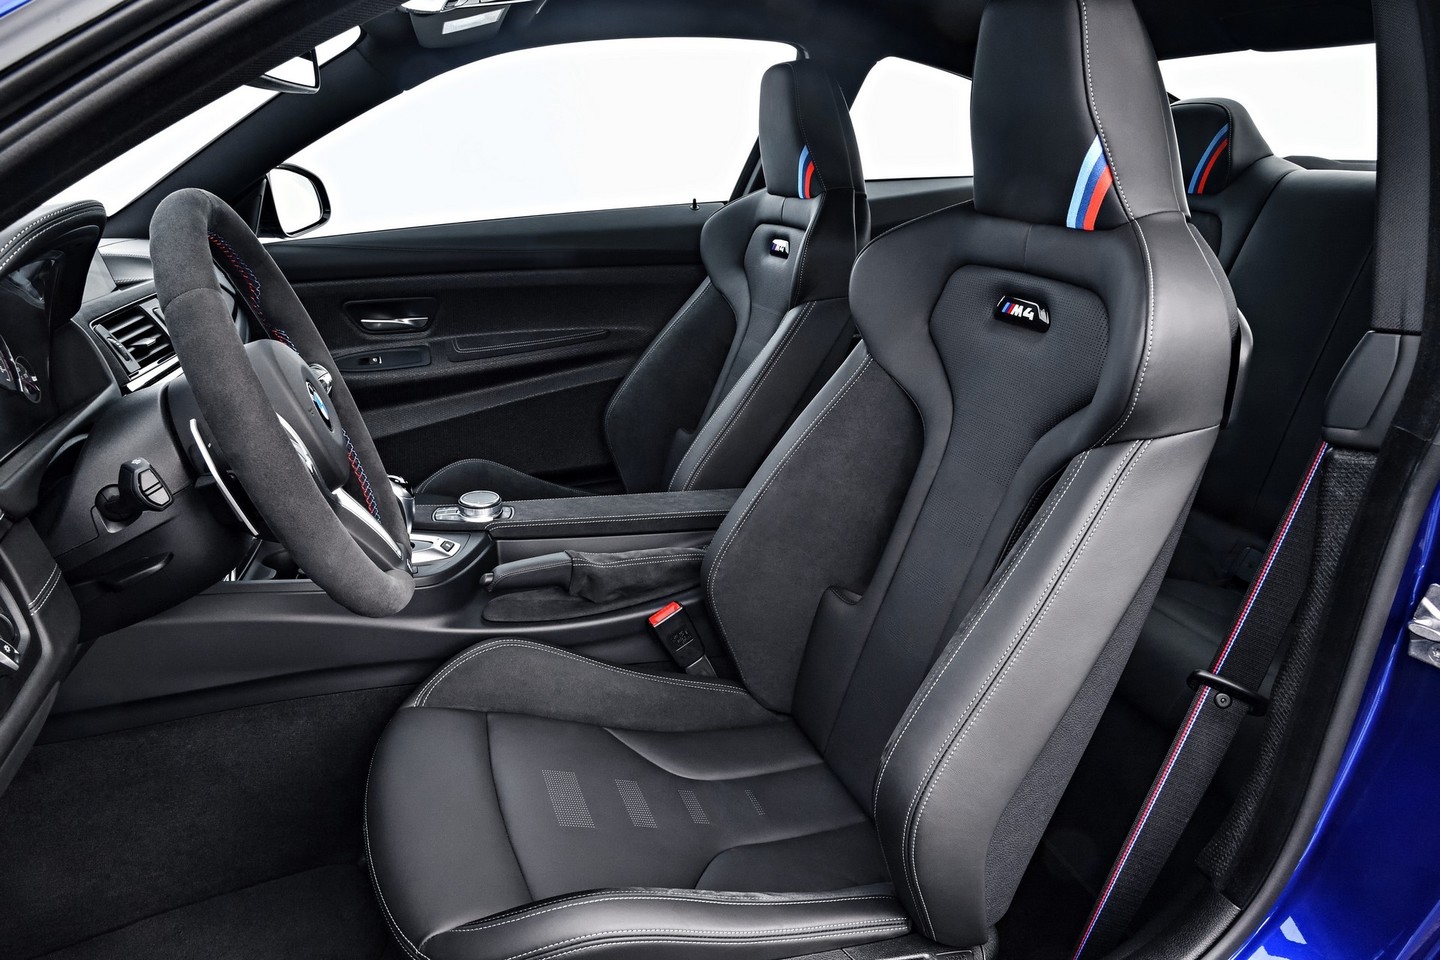 BMW M4 CS bavarų kompanijos gamoje įsitaisys tarp standartinio M4 ir lenktynių savaitgaliams skirto GTS.